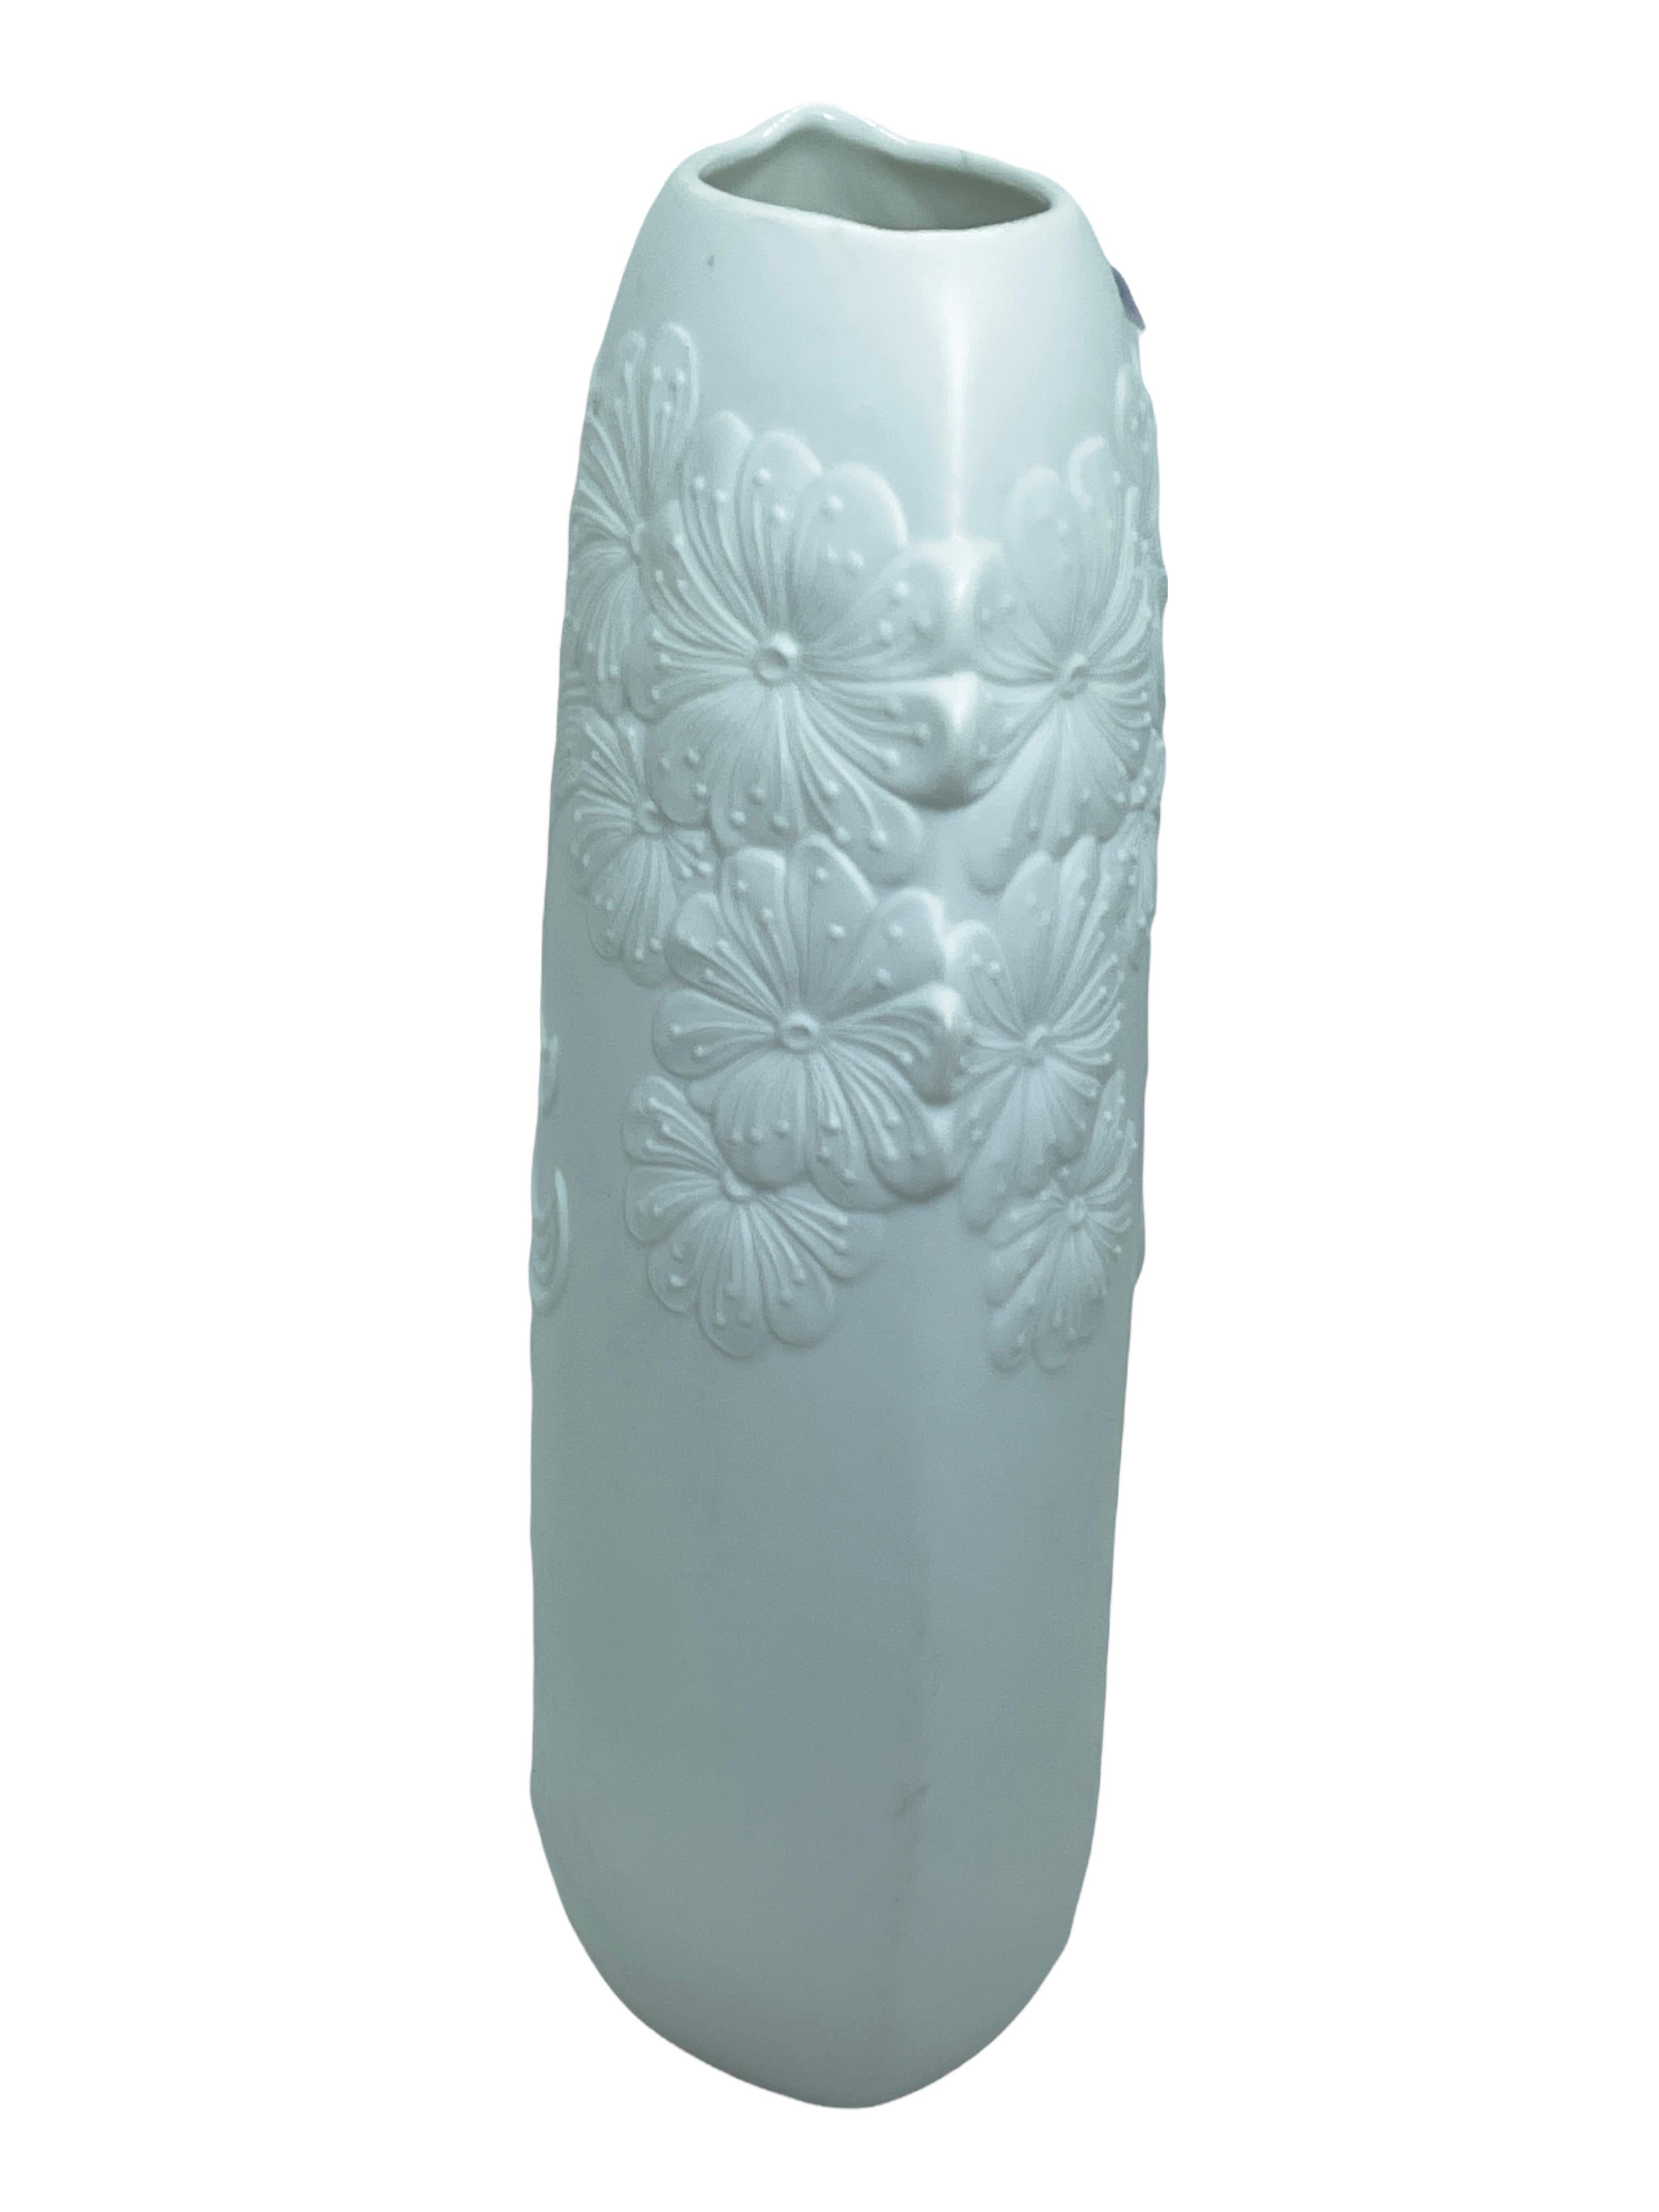 Un étonnant vase en porcelaine biscuit du milieu du siècle, fabriqué en Allemagne, par Kaiser Porcelain, signé M. Frey, vers les années 1970. Le vase est en très bon état, sans éclats, ni fissures, ni morsures de puces. Signé avec la marque de